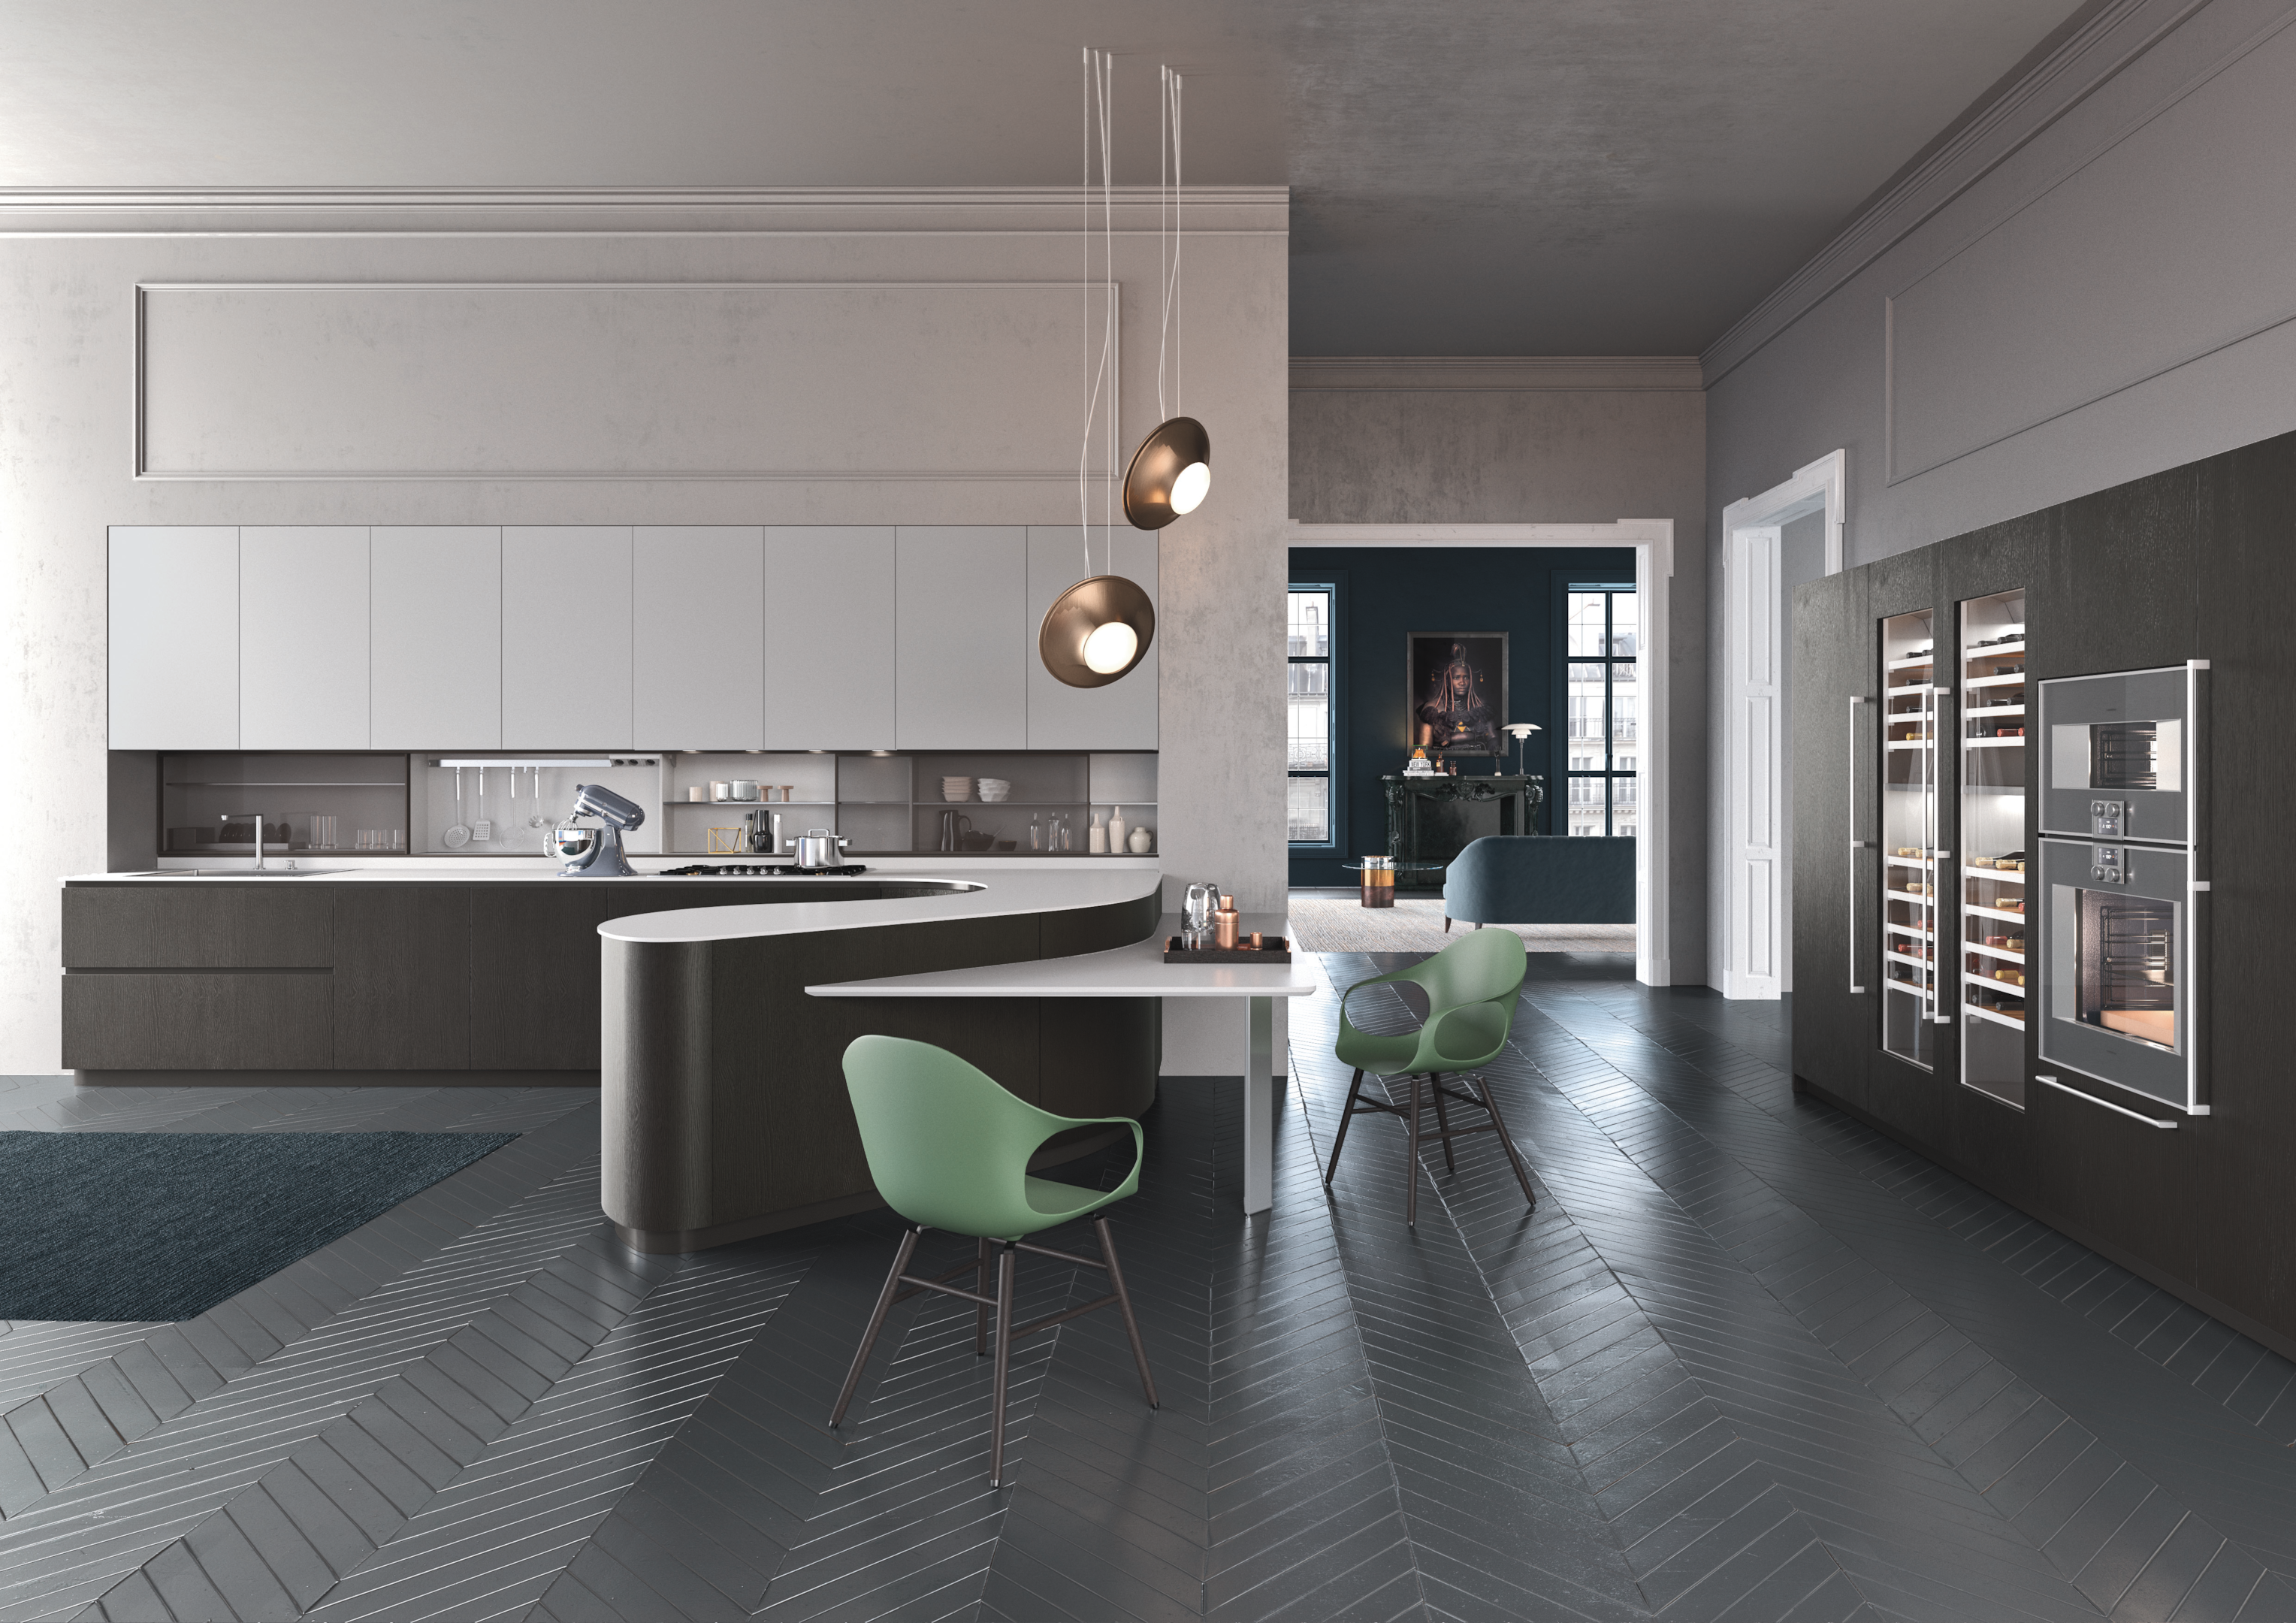  Luxury Kitchen cabinetry design - Pedini Miami